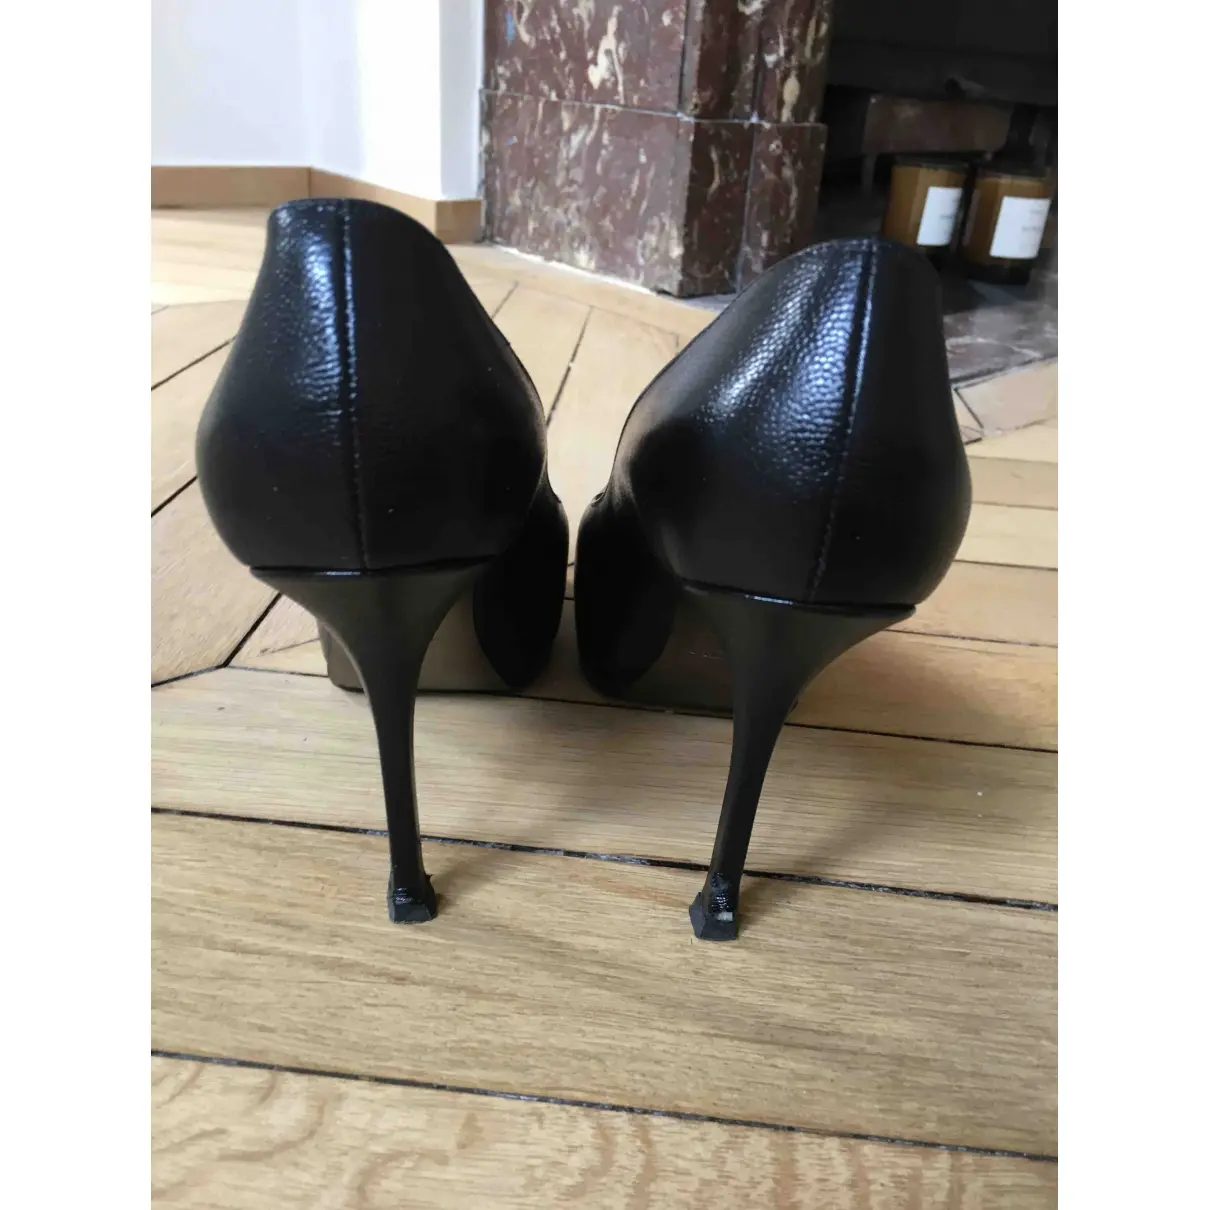 Buy Yves Saint Laurent Trib Too leather heels online - Vintage